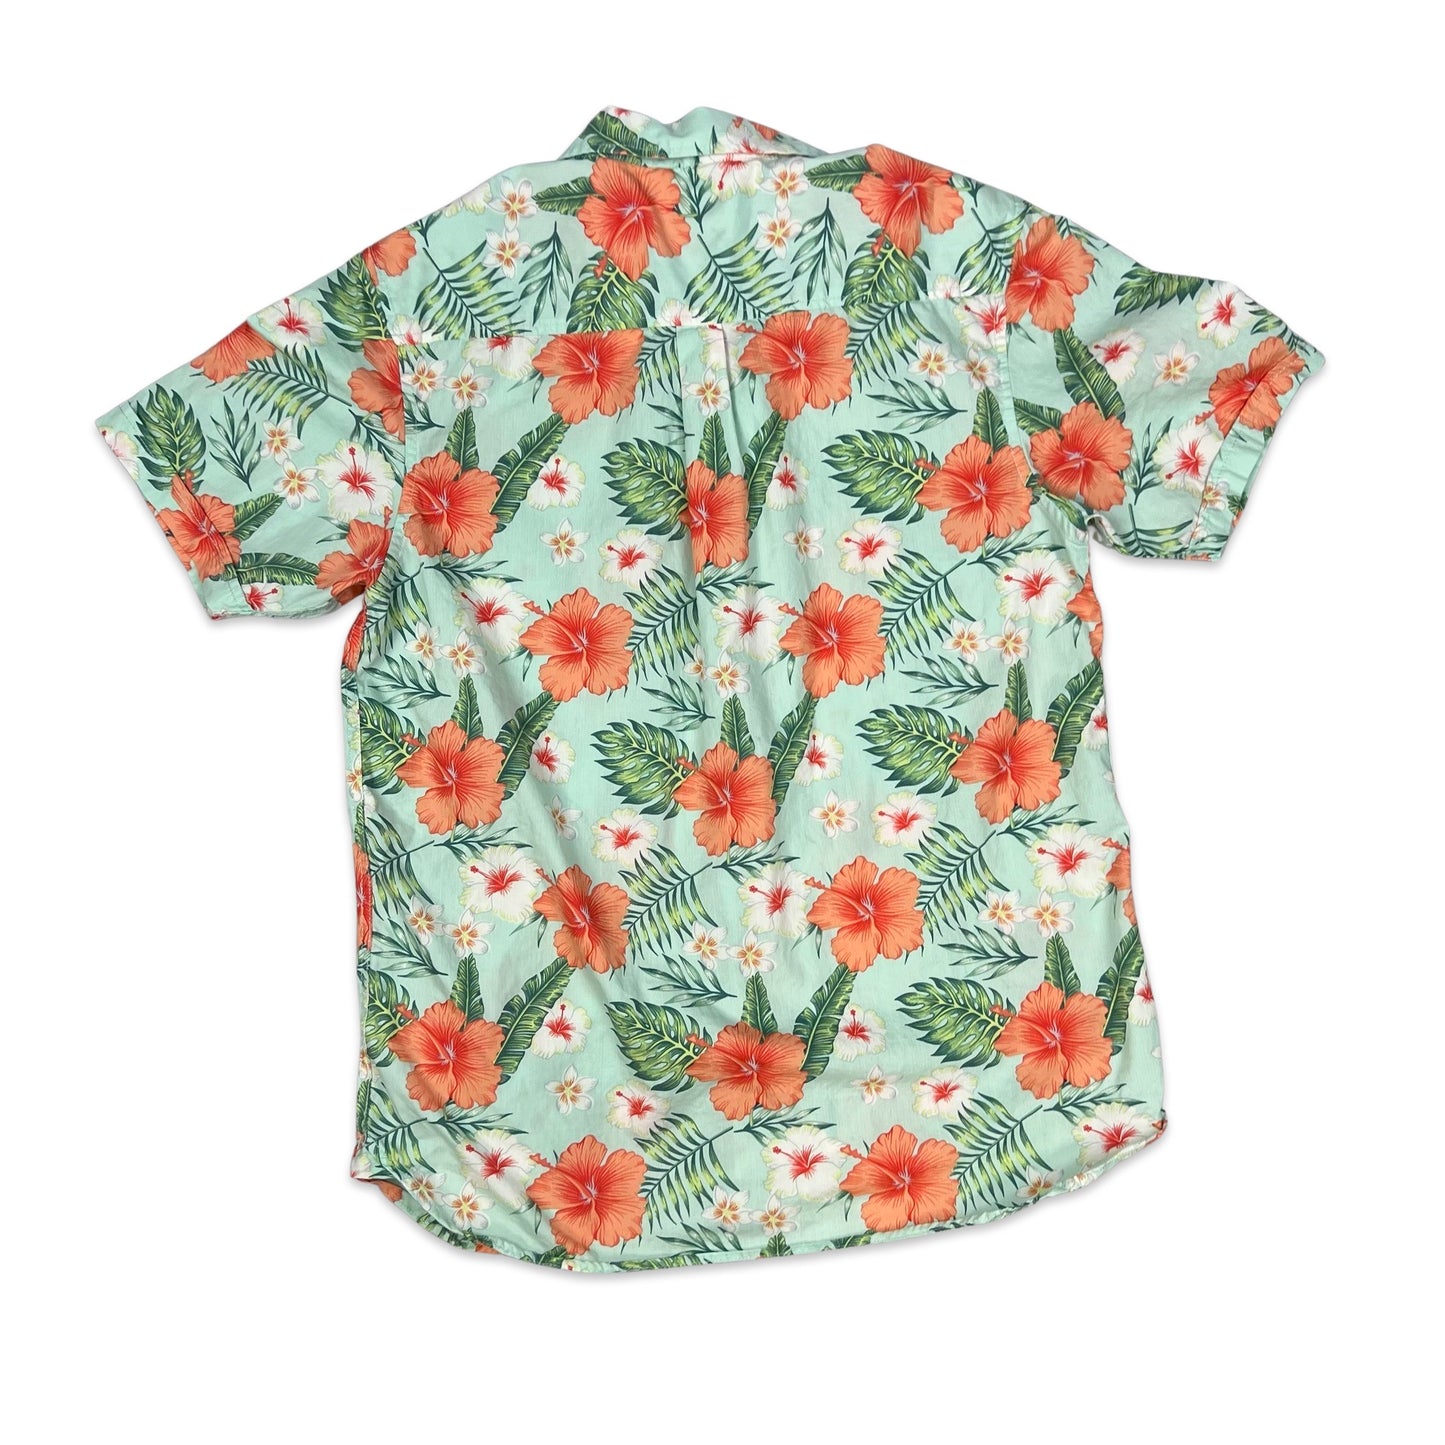 Pierre Cardin Green & Pink Floral Print Hawaiian Shirt M L